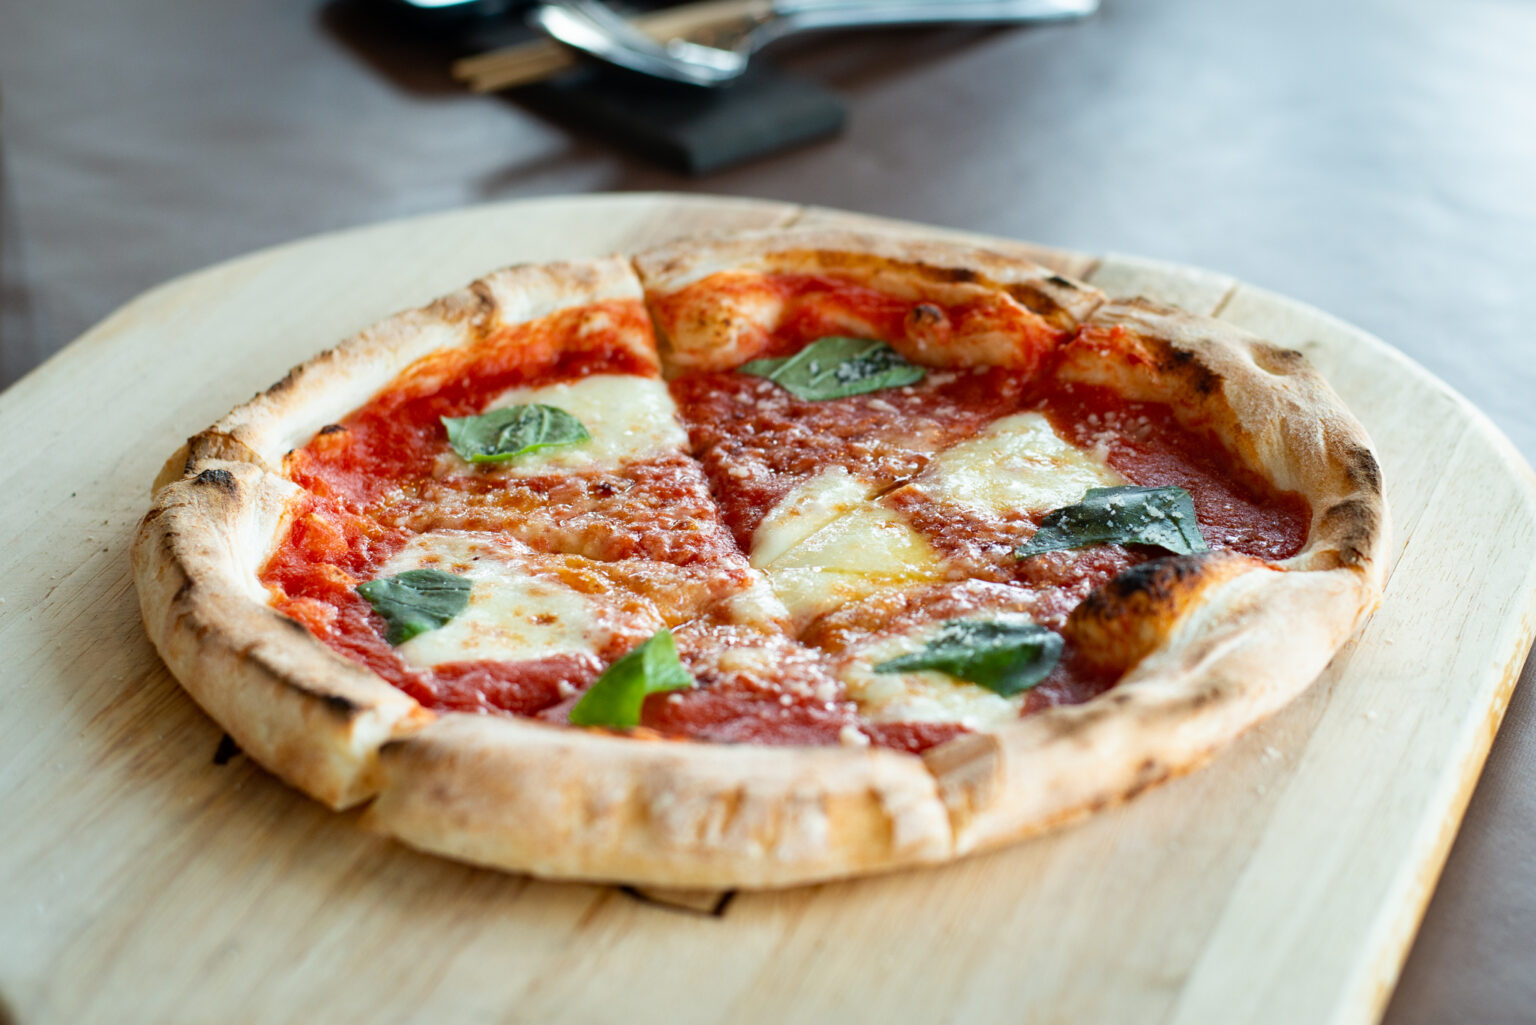 ピザ生地にも「白神こだま酵母」を使用。「マルゲリータ」は、トマトとバジル、モッツァレラチーズのみがトッピングされたシンプルなピザですが、最高においしい！材料へのこだわりだけでなく、卓越した技術も感じさせます。